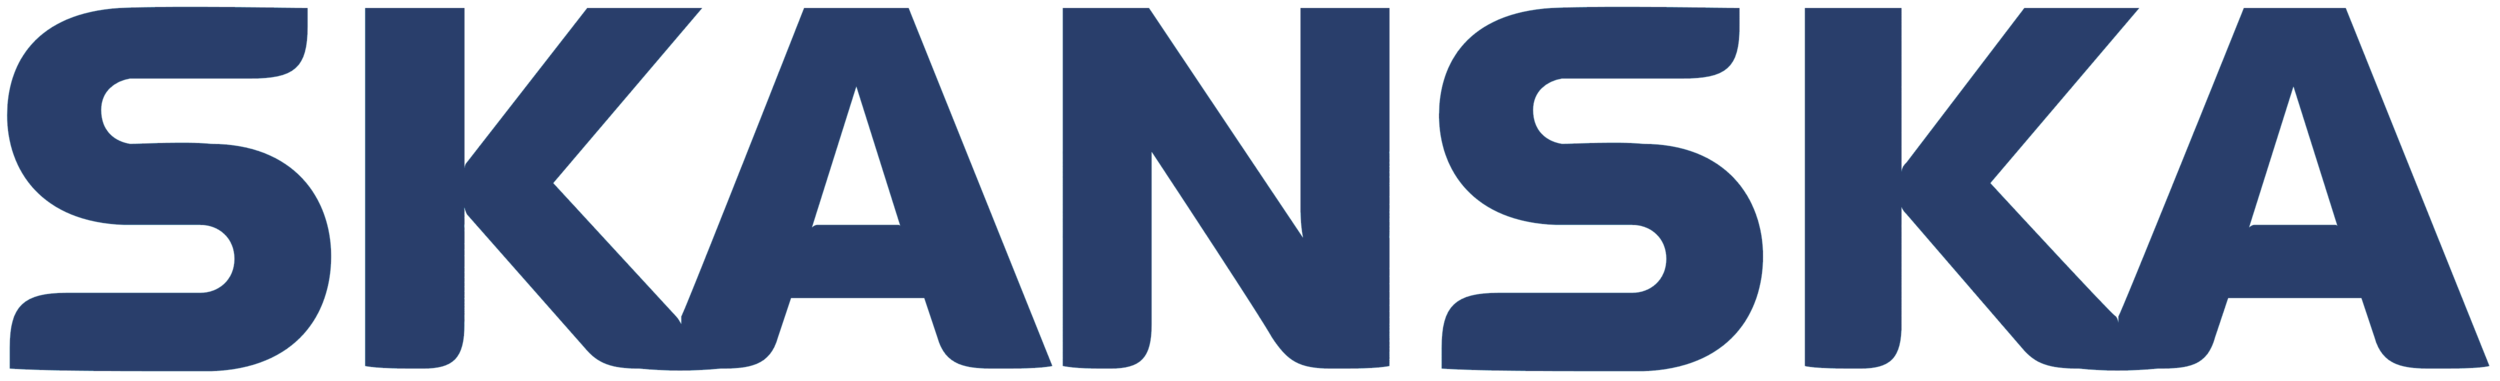 Skanska_logo.png